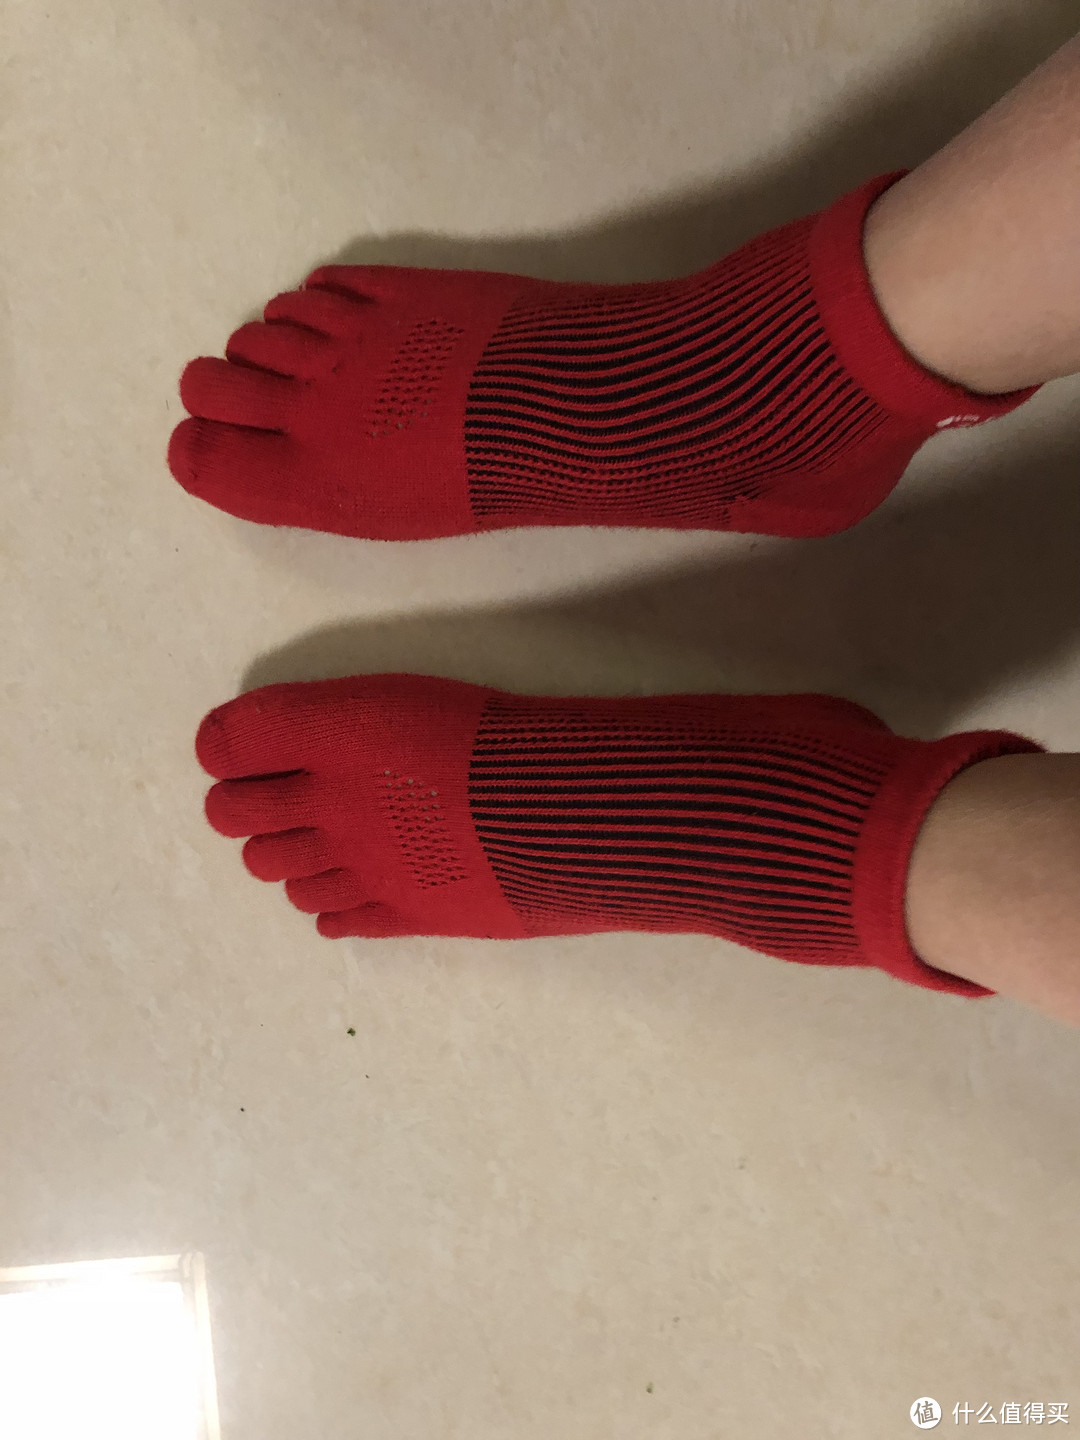 关于试用莱卡品牌发热3D五指压缩袜的感受